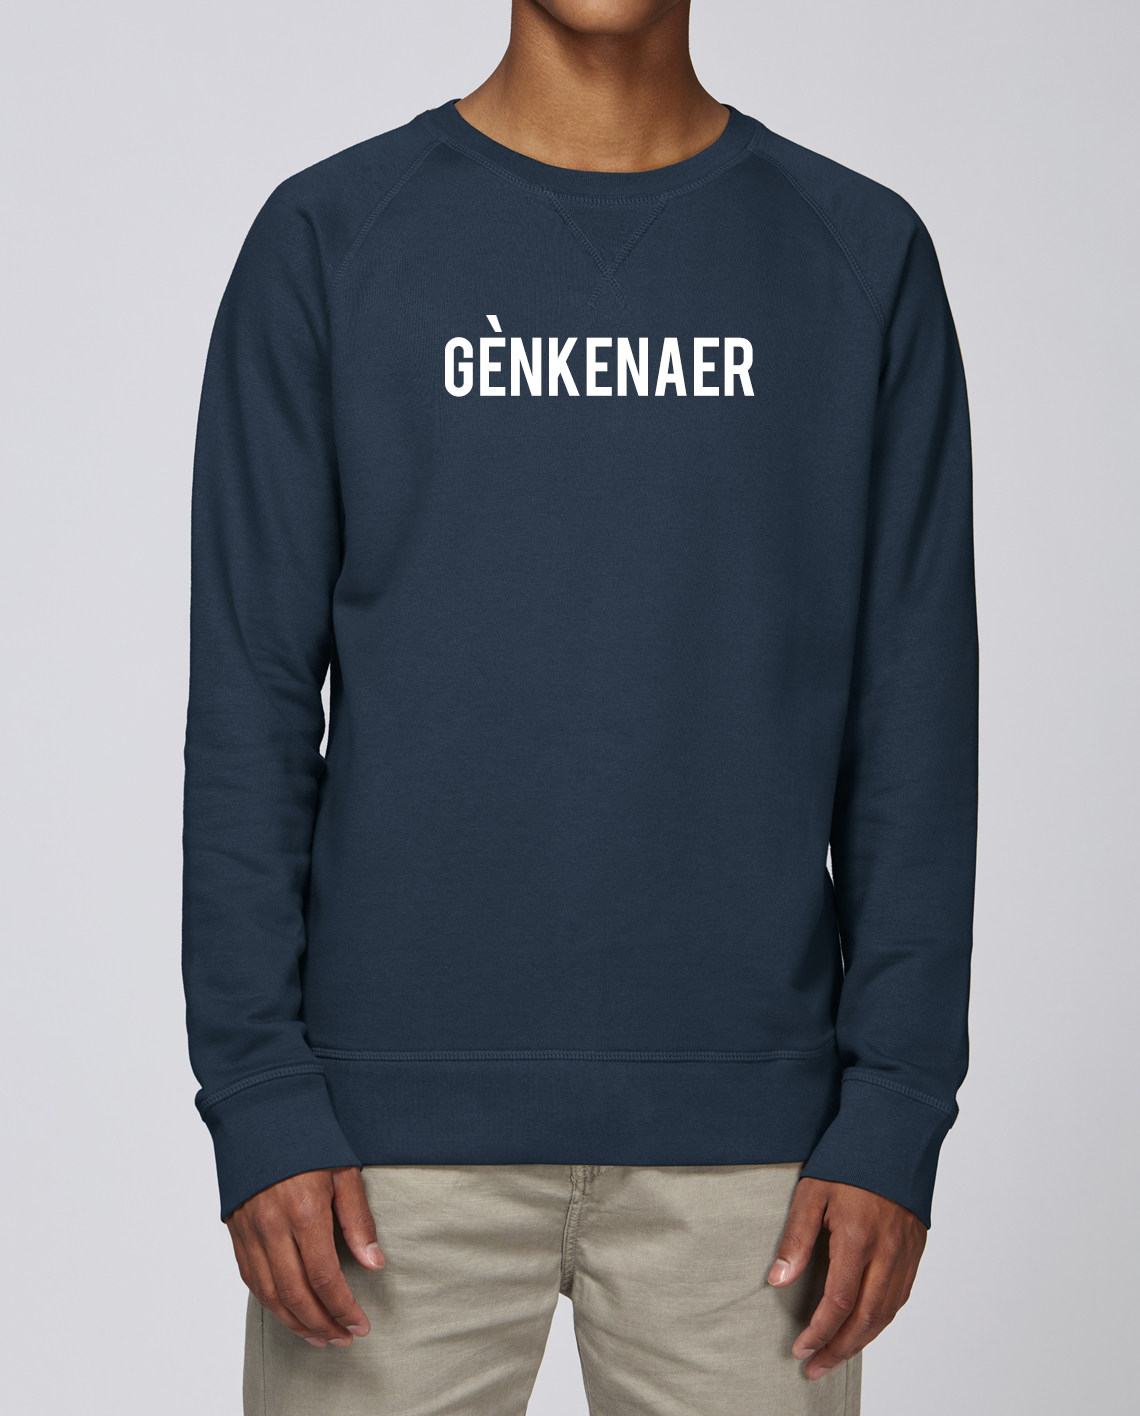 online kopen genk sweater